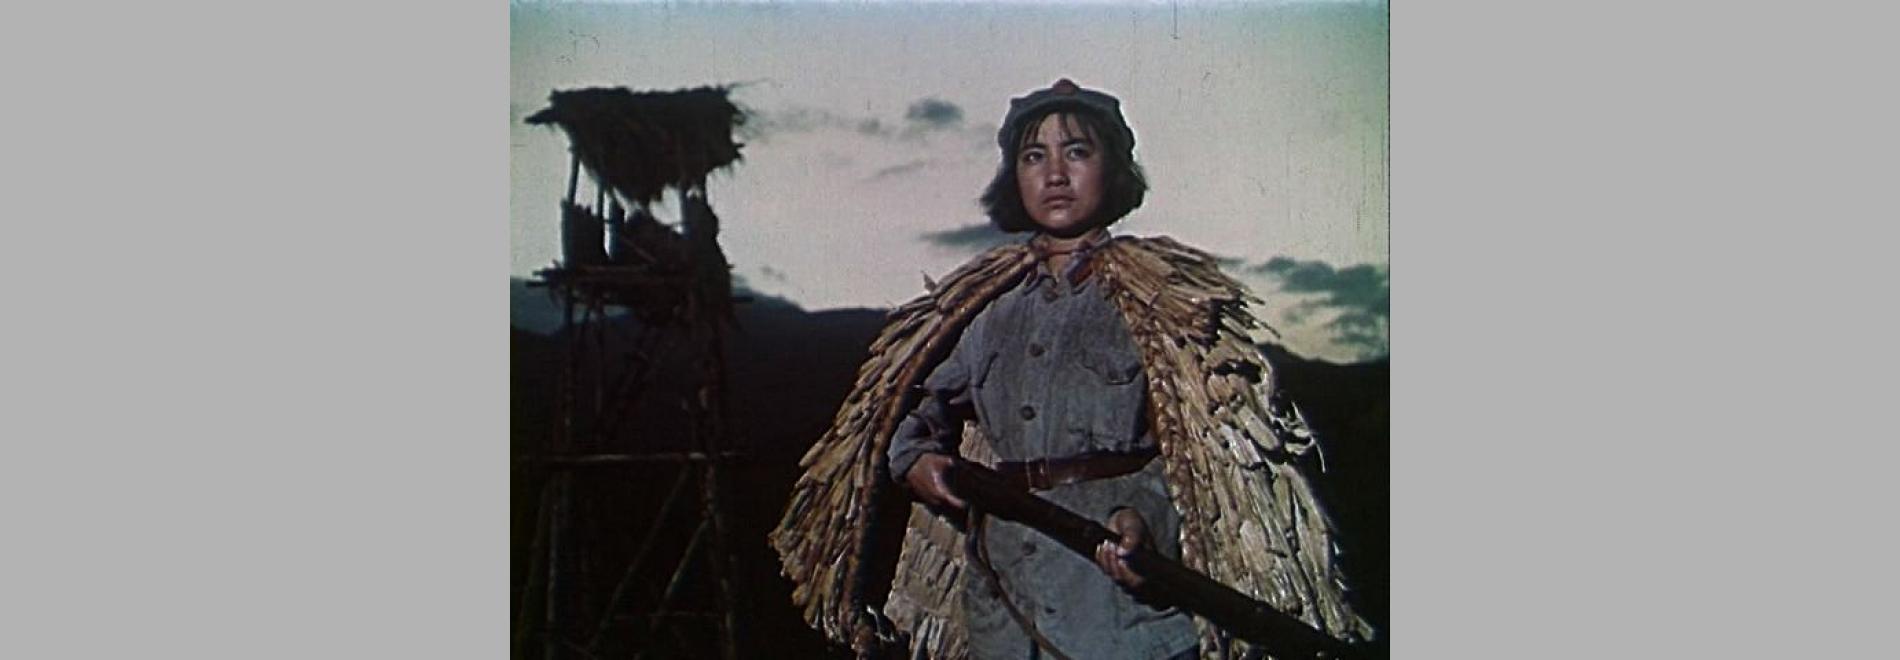 Hong se niang zi jun / El destacament roig de dones (Jin Xie, 1961)